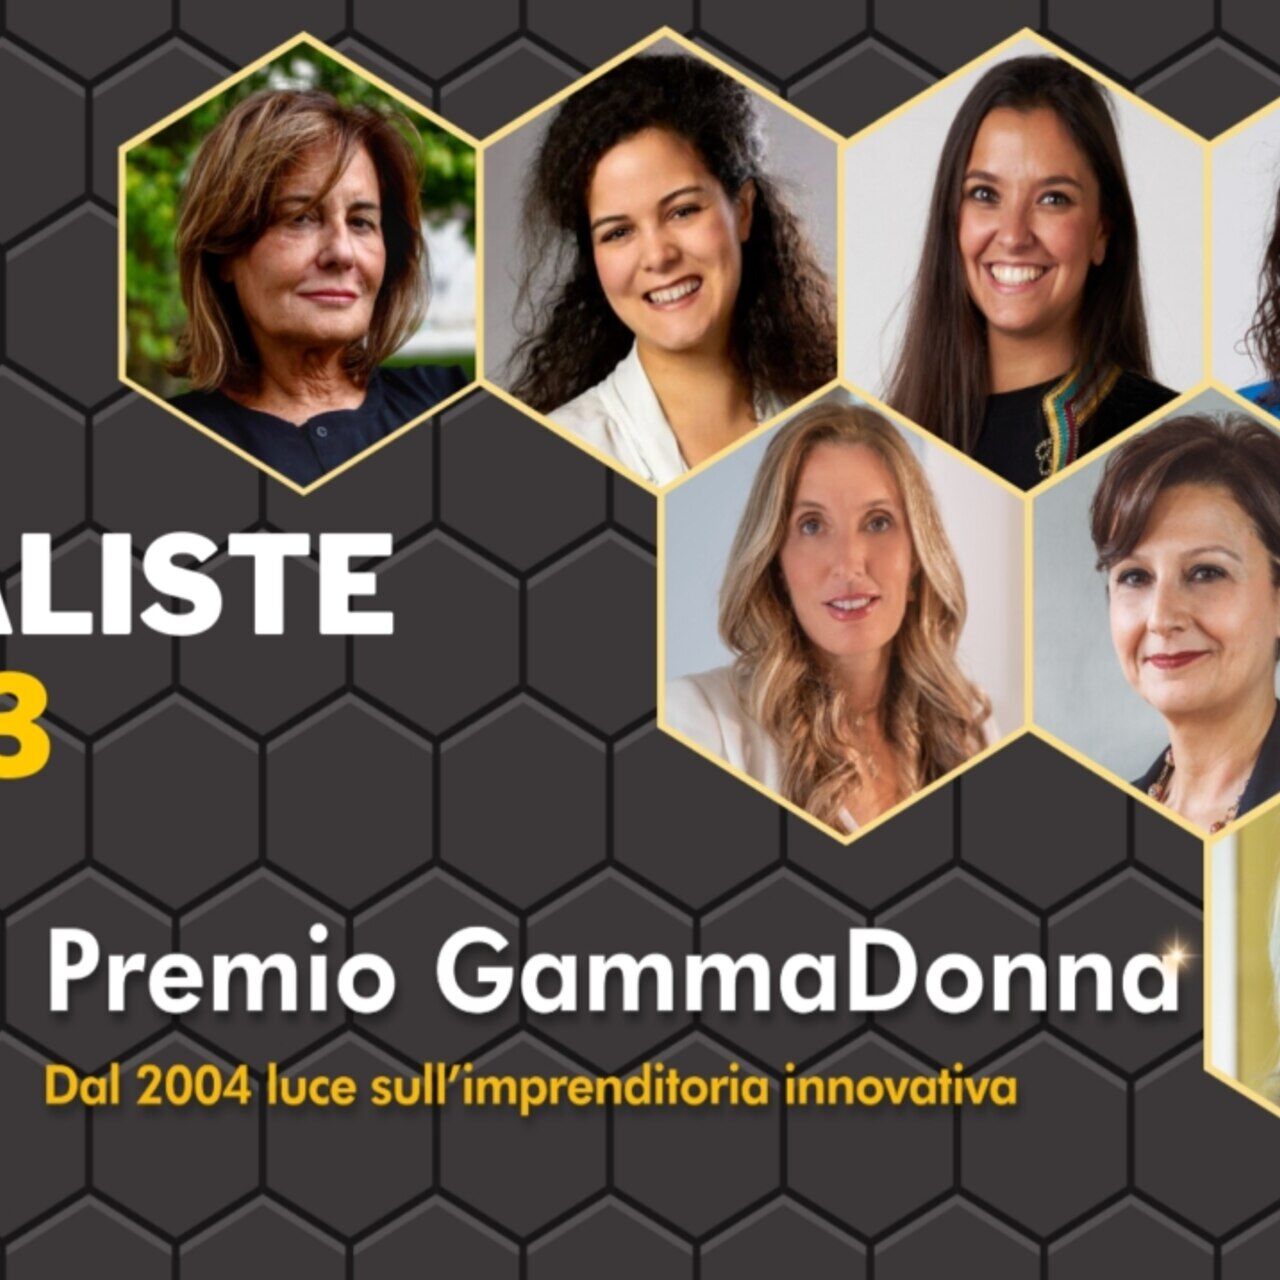 GammaDonna Award: 2023-finalistene